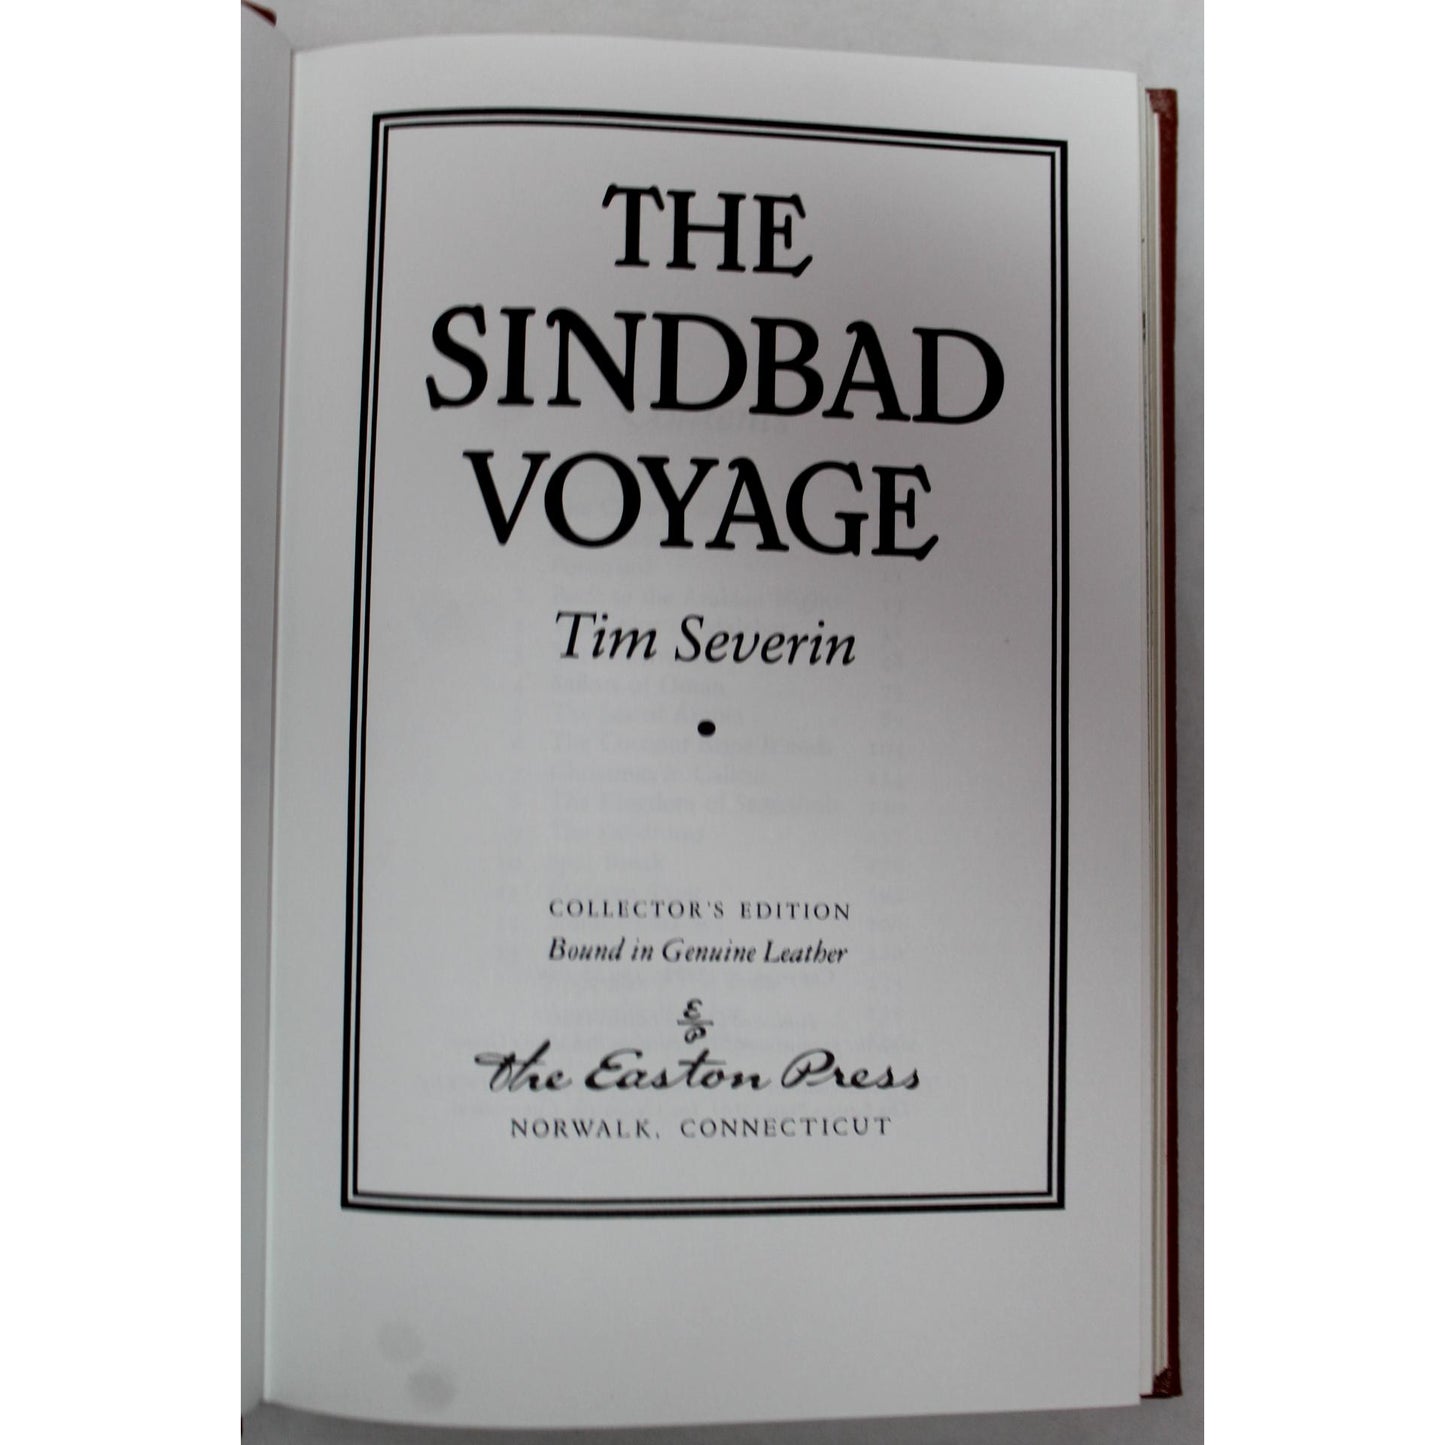 The Sinbad Voyage - Tim Severin